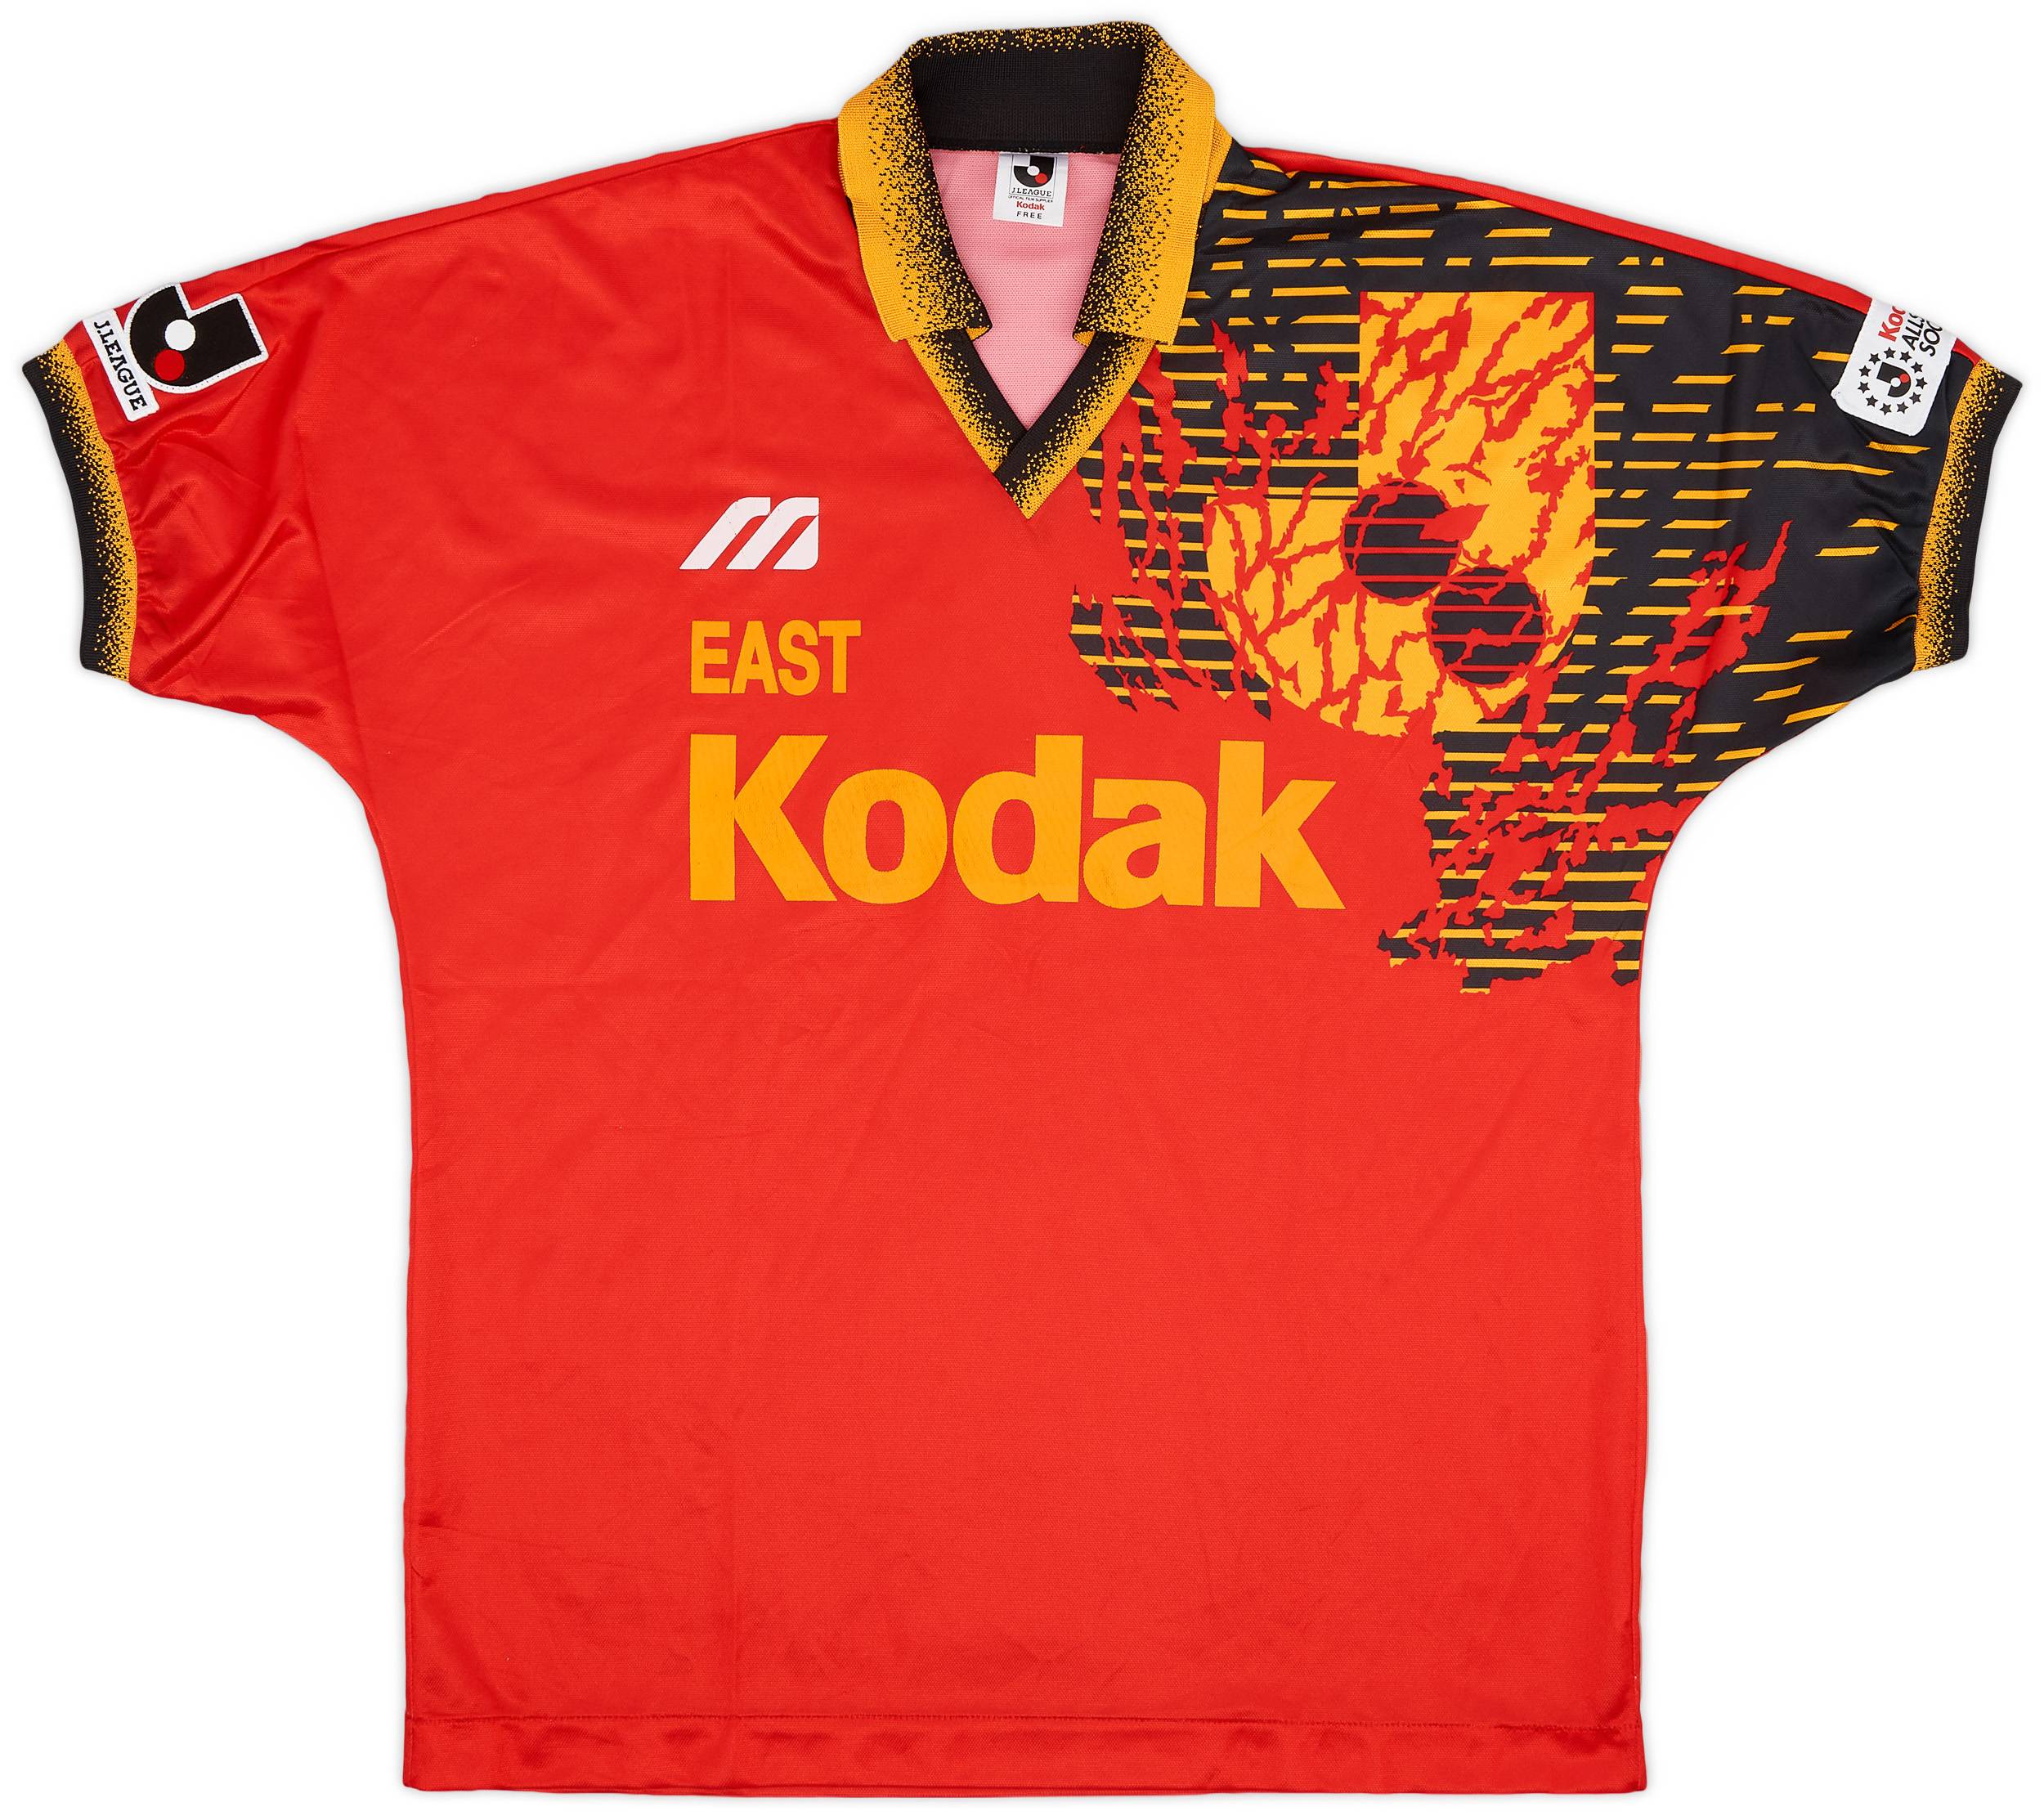 1993 J League All Star Match East Shirt - 9/10 - (L)